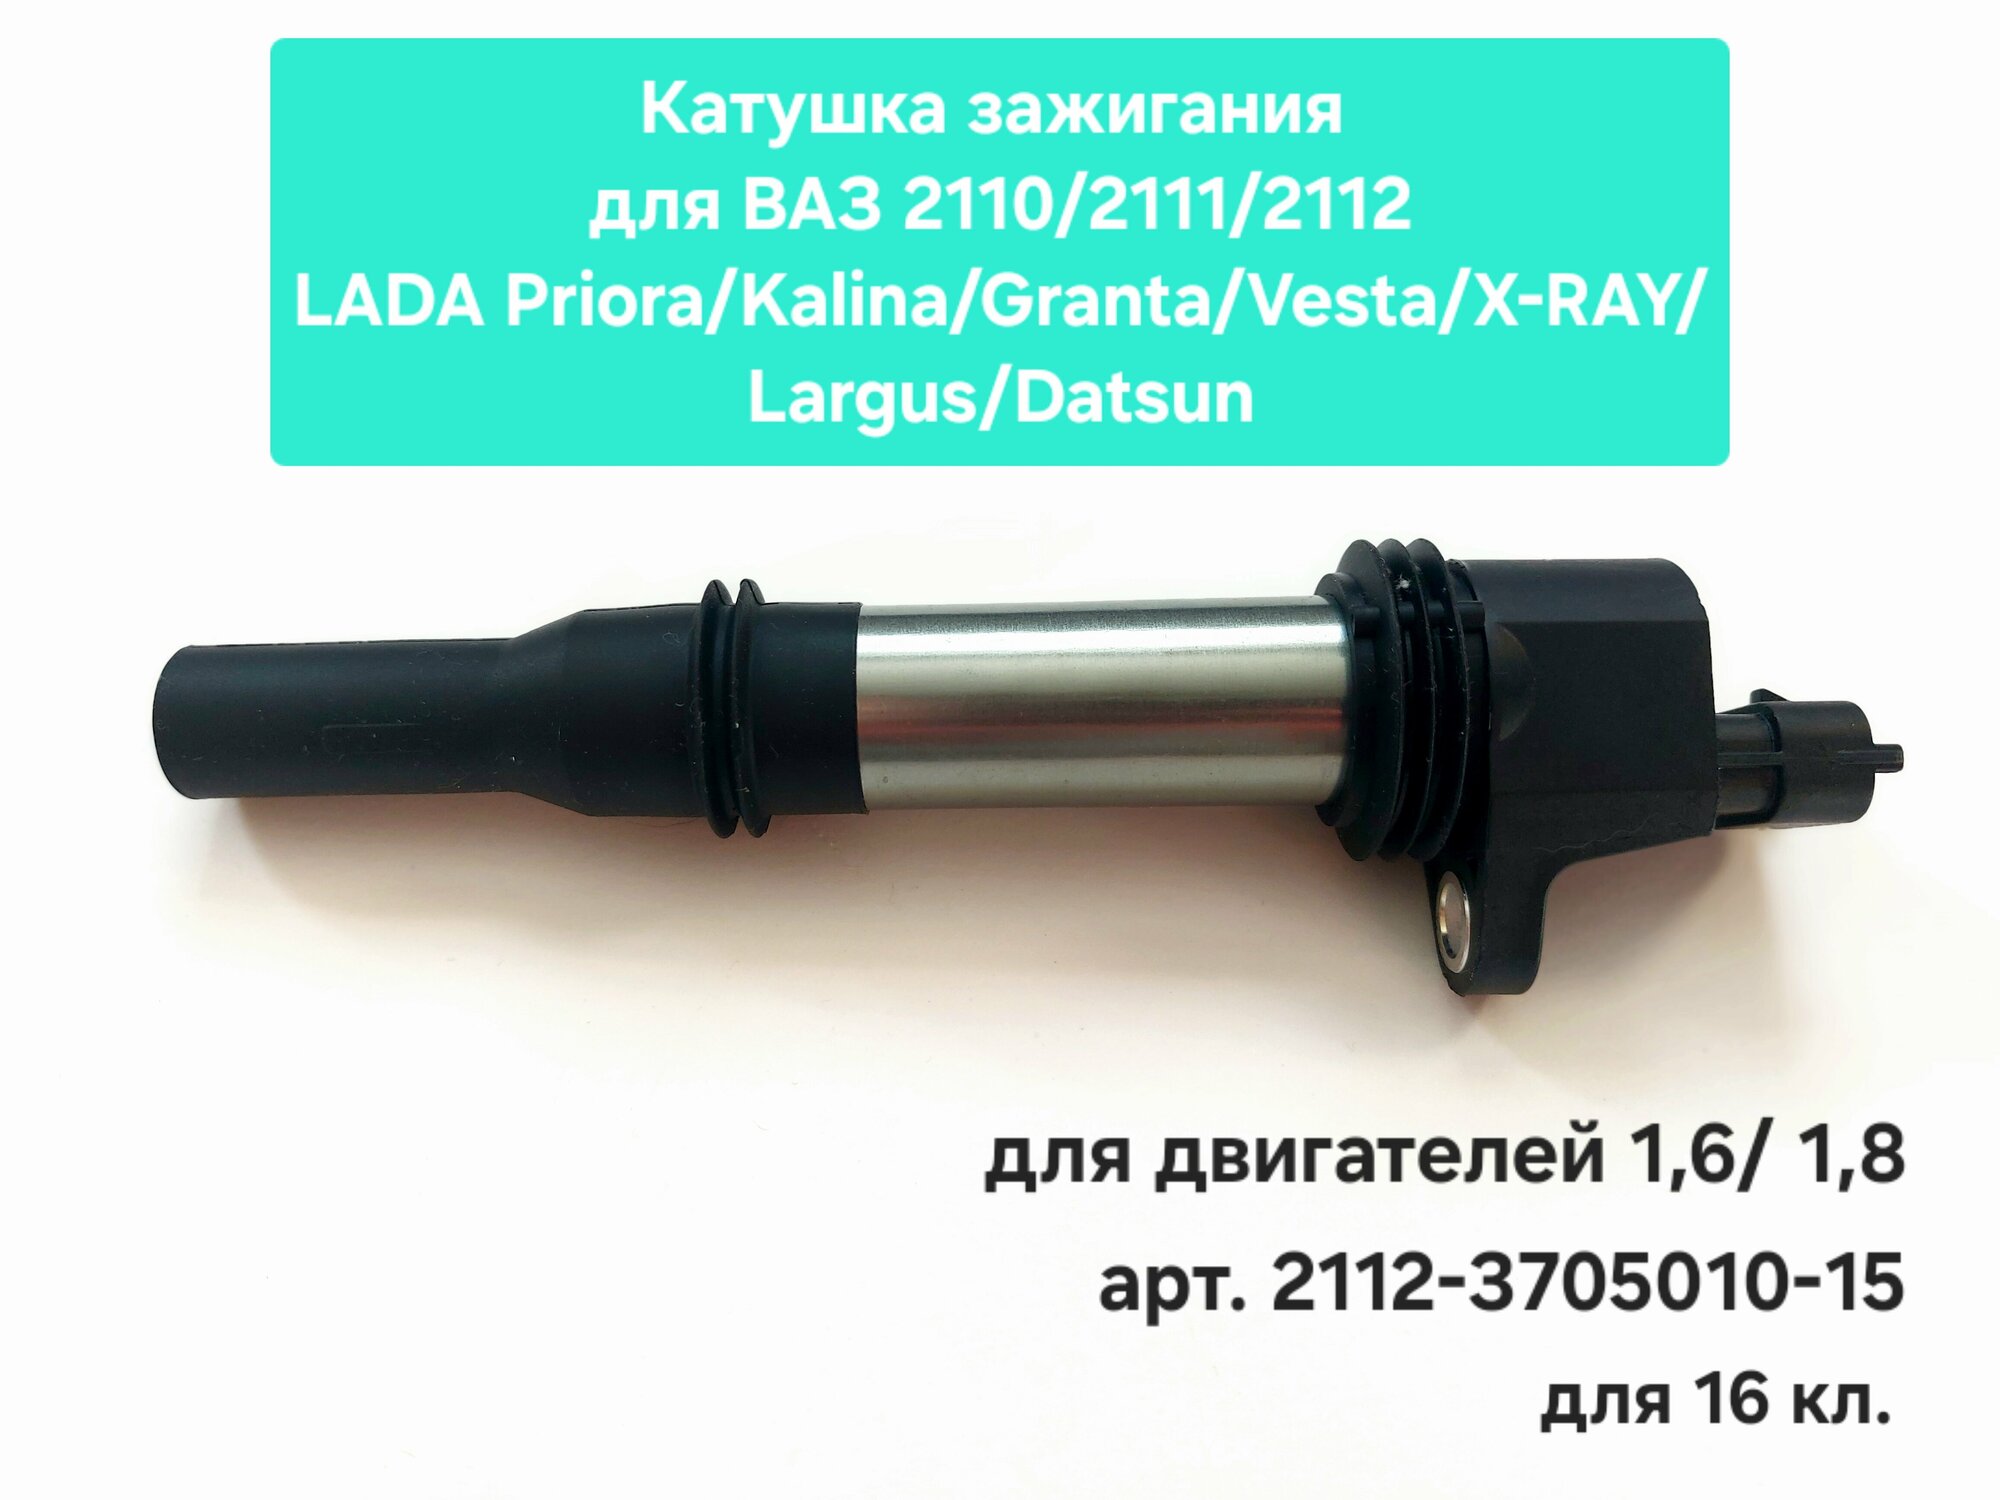 Катушка зажигания для ВАЗ 2110-2112/LADA Priora, Kalina, Granta, Vesta, X-RAY, Largus, Datsun для двигателей 1,6 и 1,8